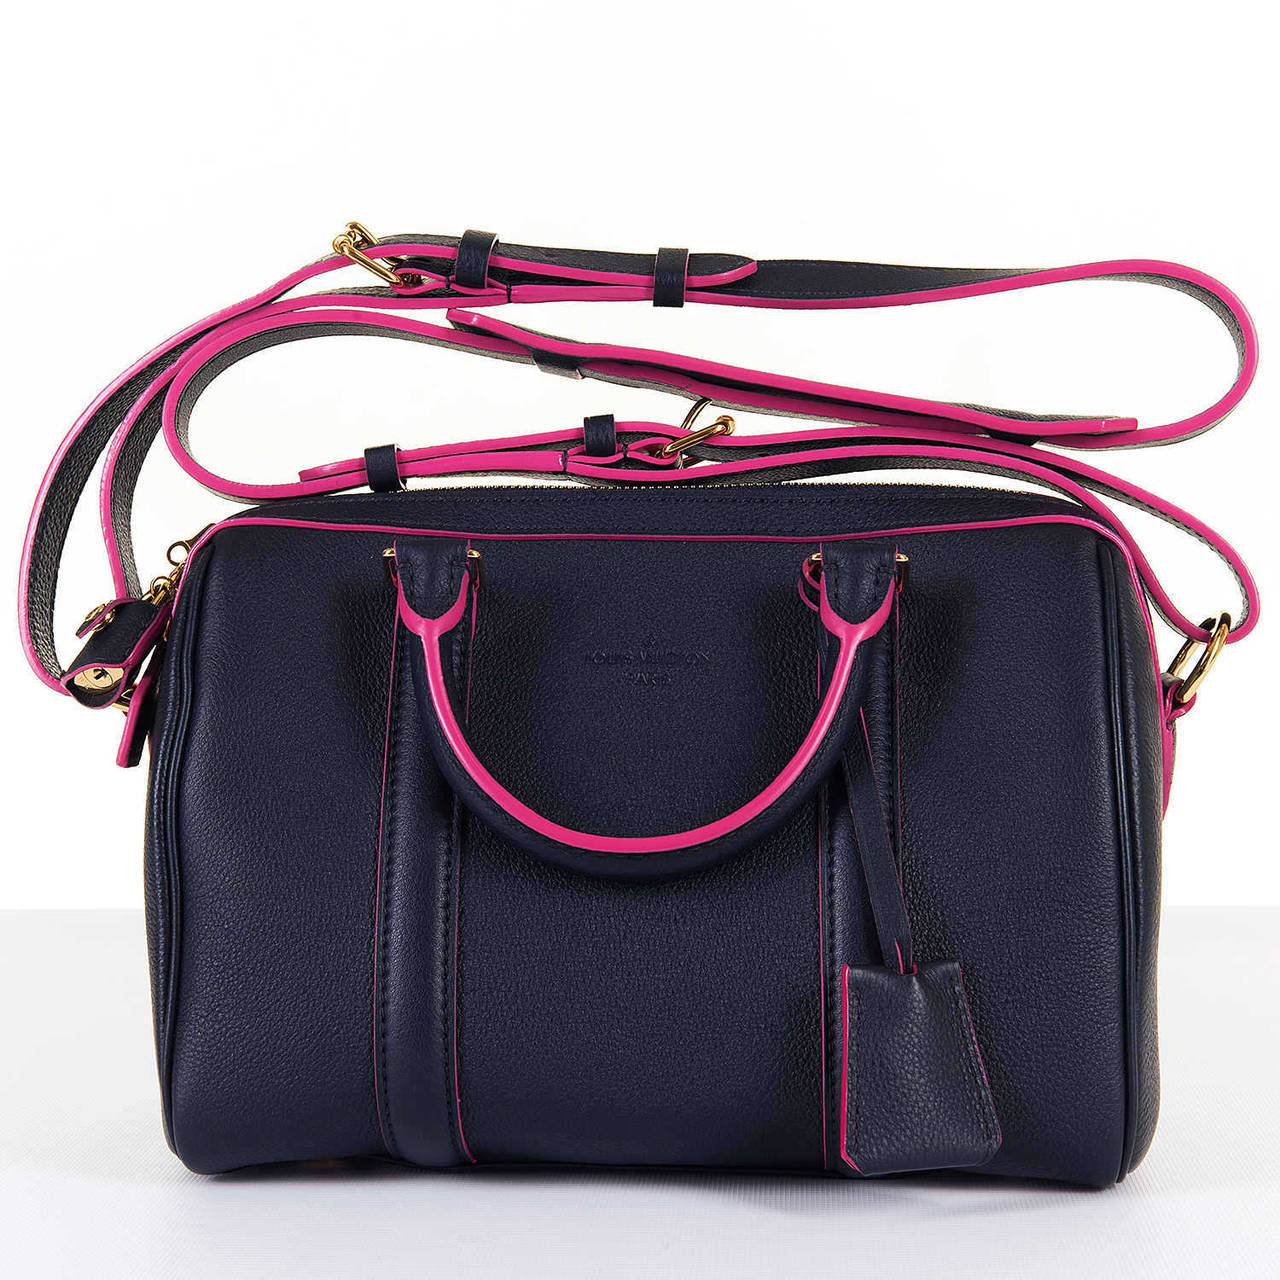 Women's 'New & Unused' Limited Edition Louis Vuitton Sofia Coppola 'Veau-Cachmire'  Bag